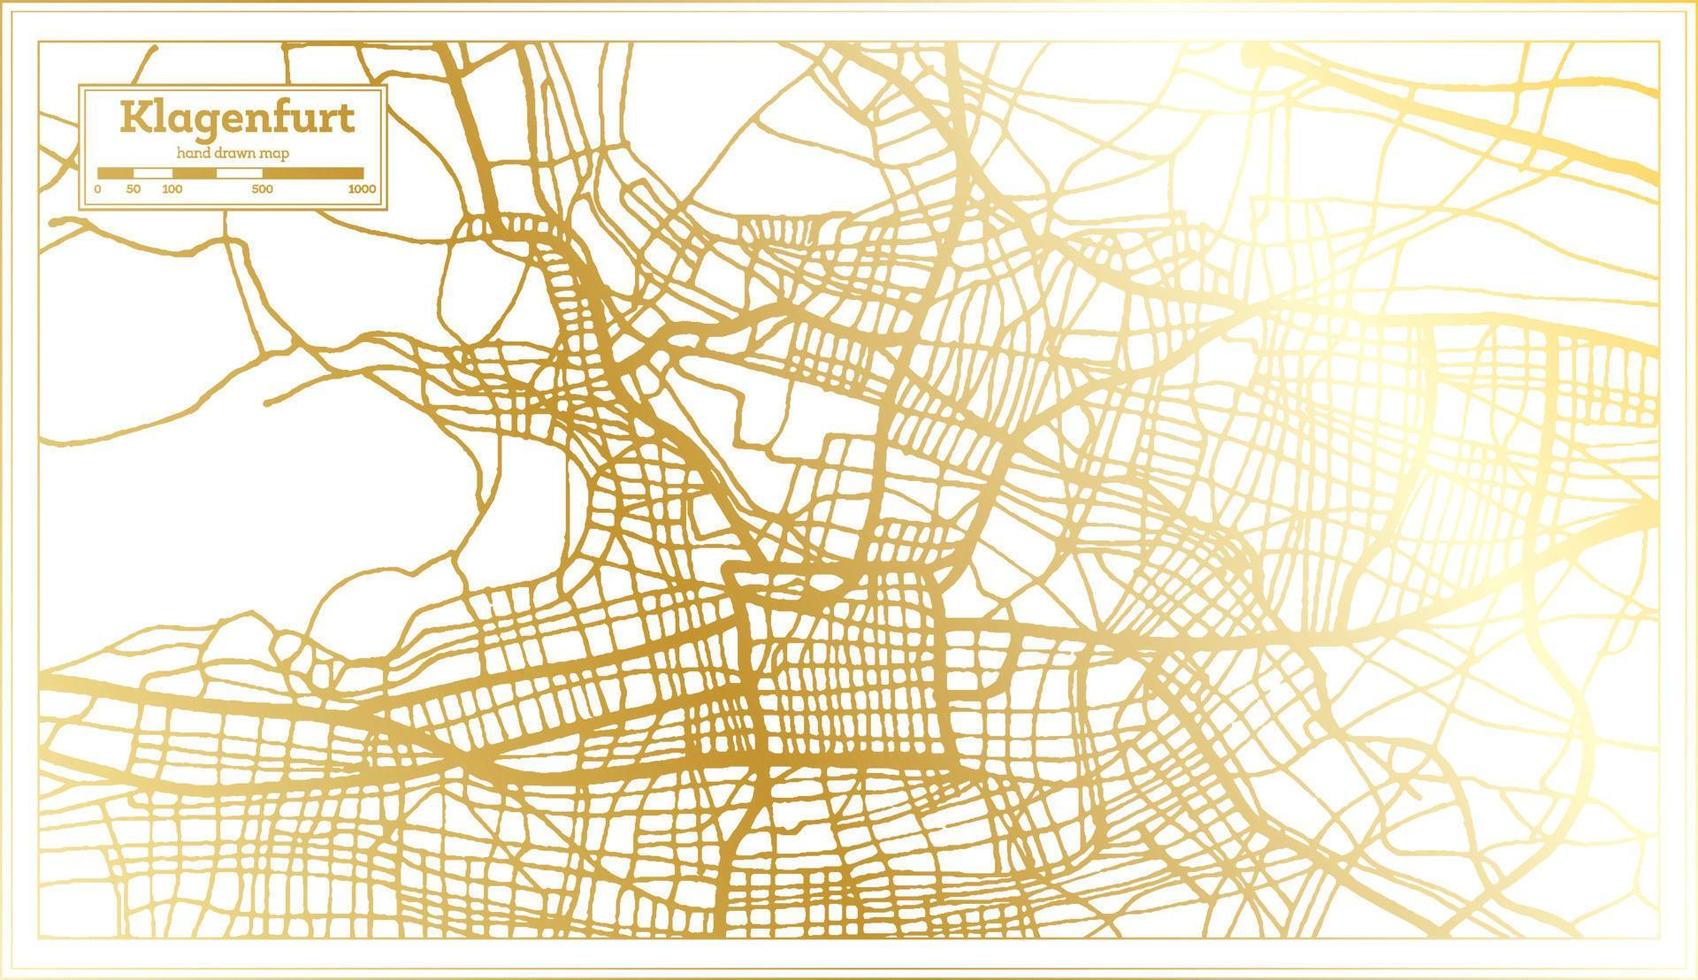 klagenfurt Oostenrijk stad kaart in retro stijl in gouden kleur. schets kaart. vector